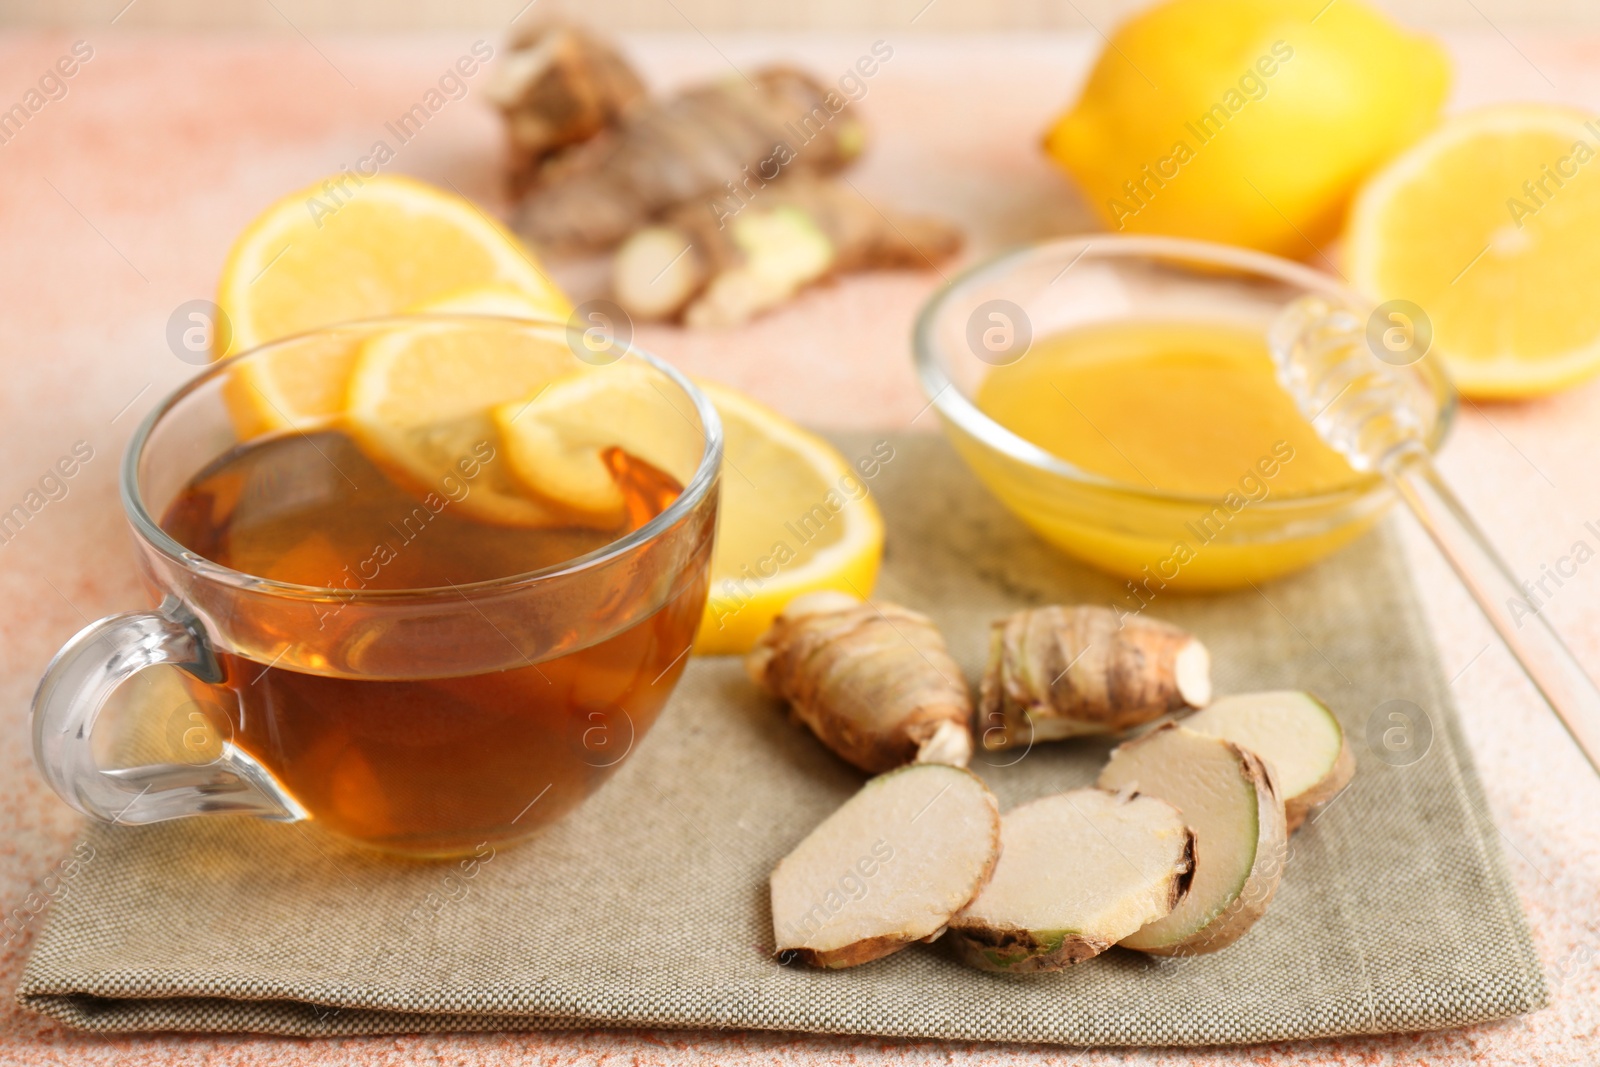 Photo of Tea, honey, lemon and ginger on table